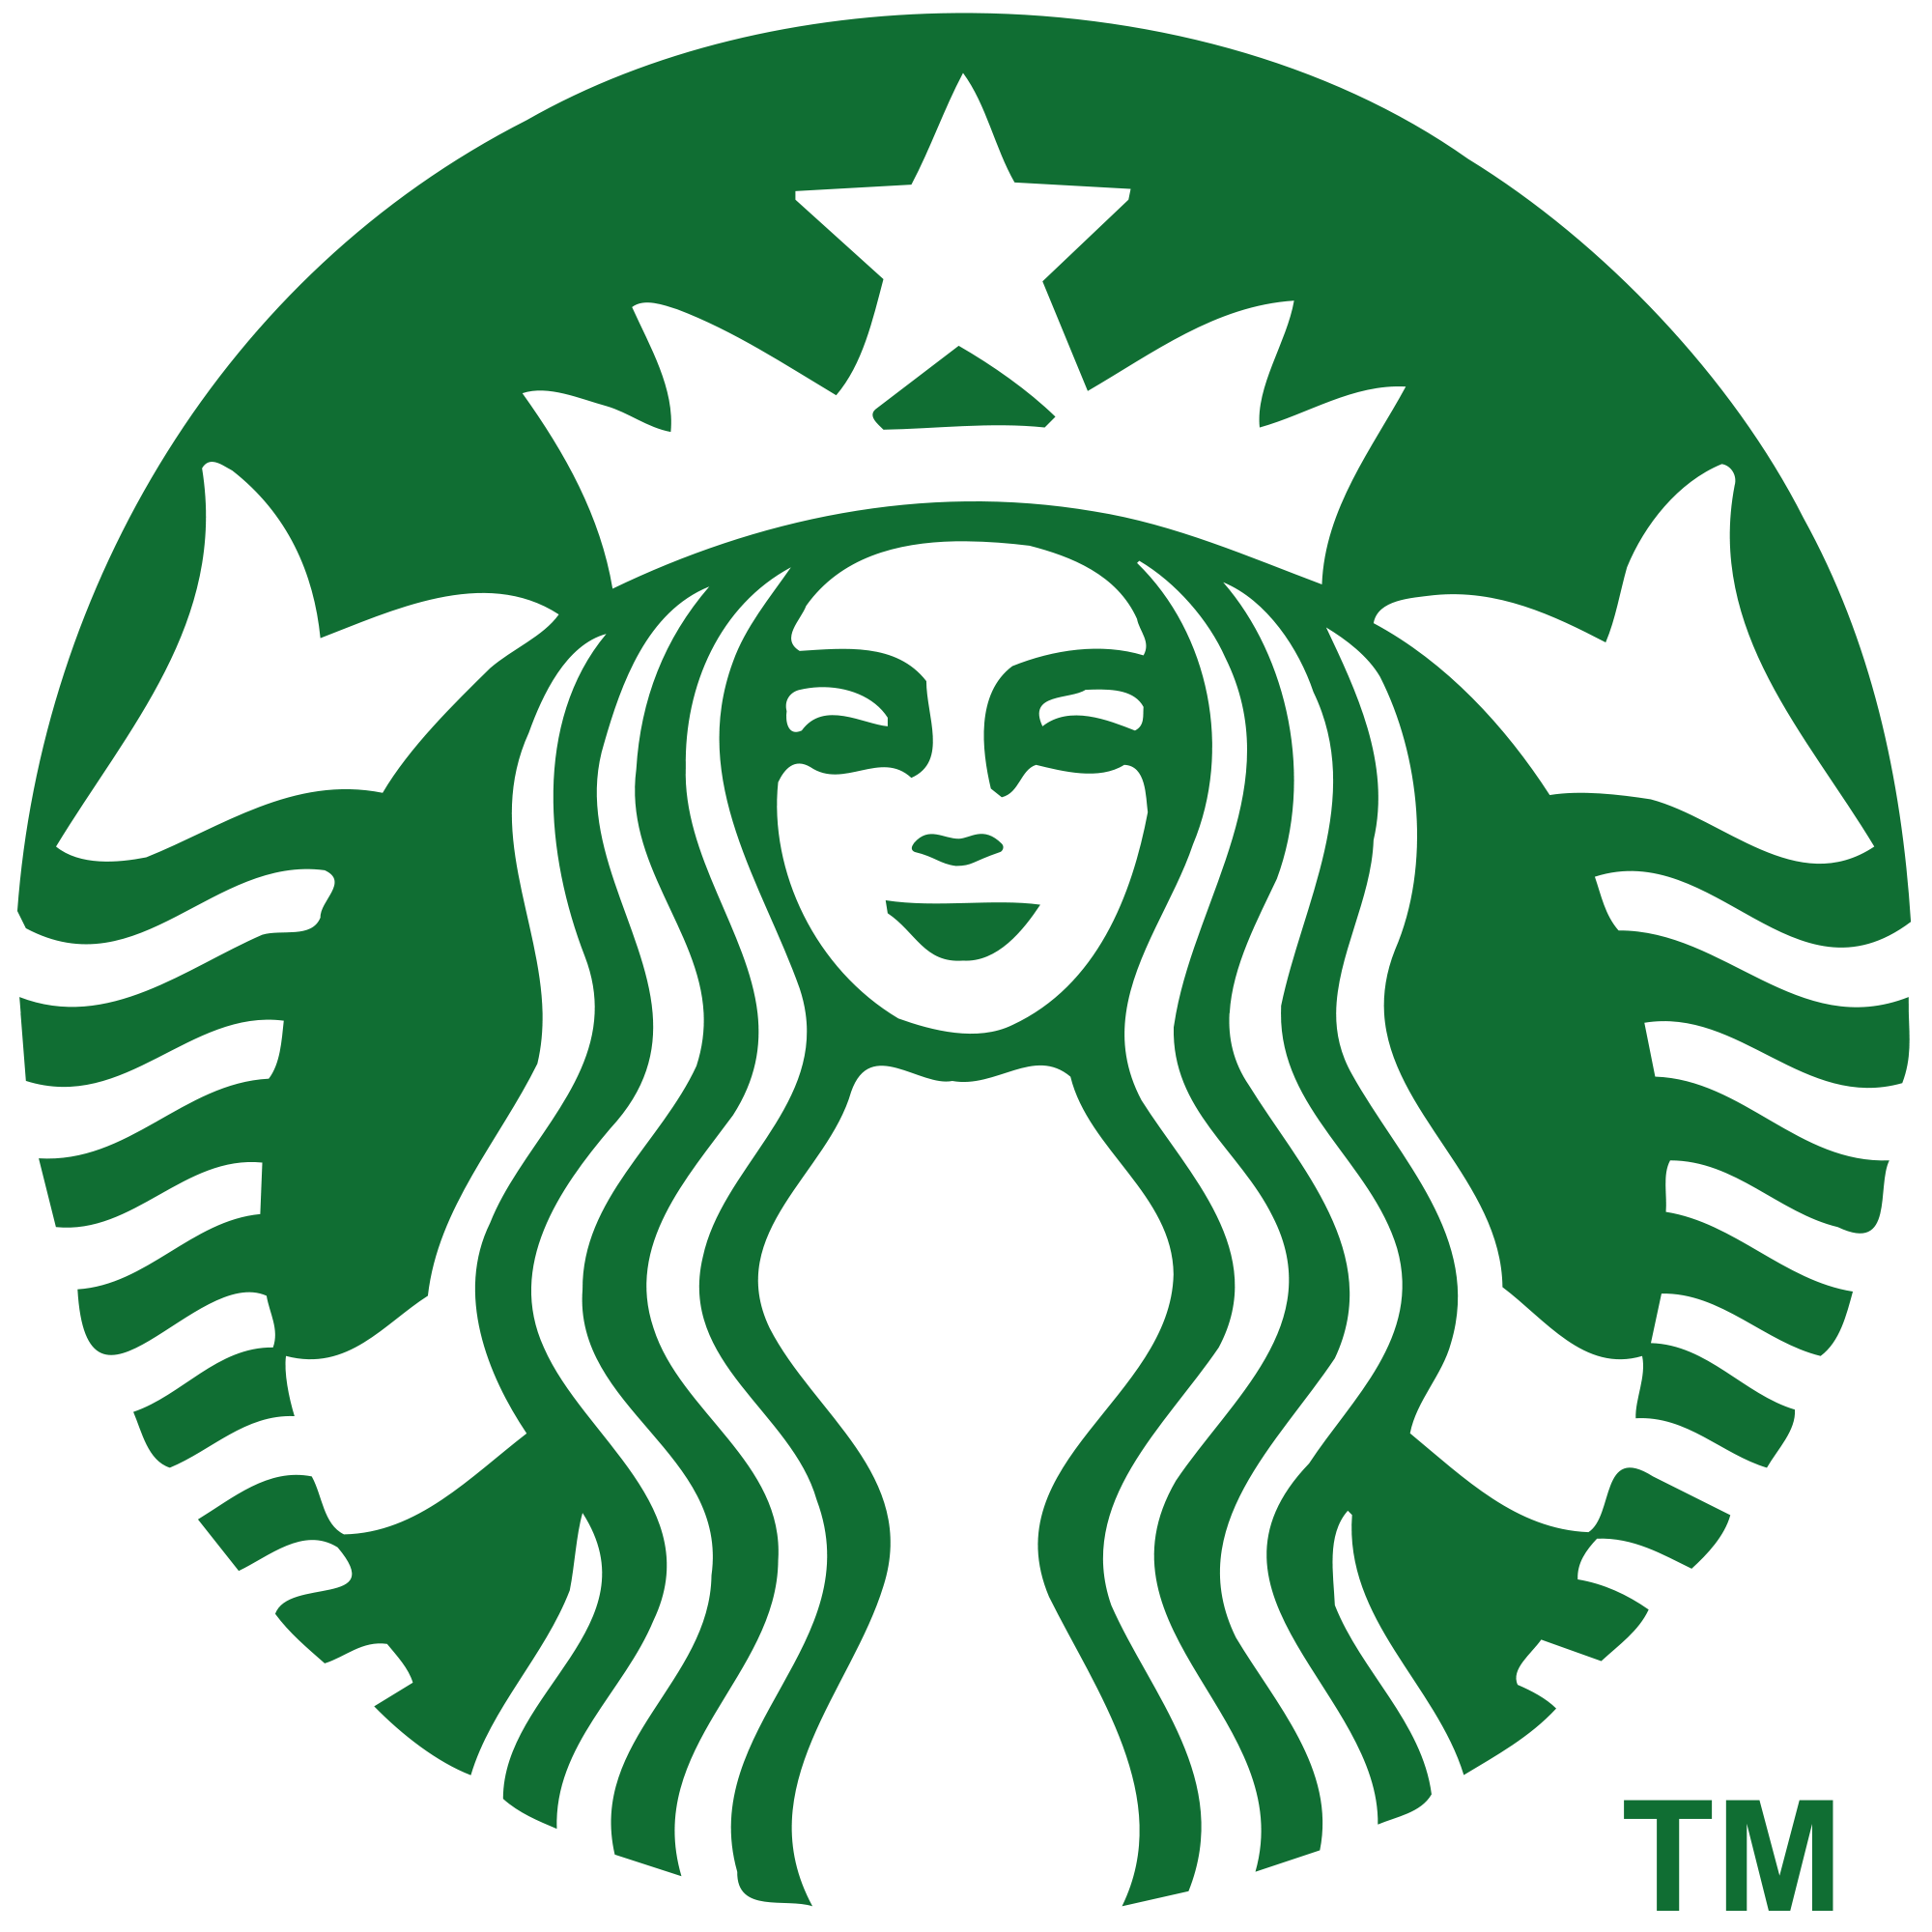 Starbucks logosu